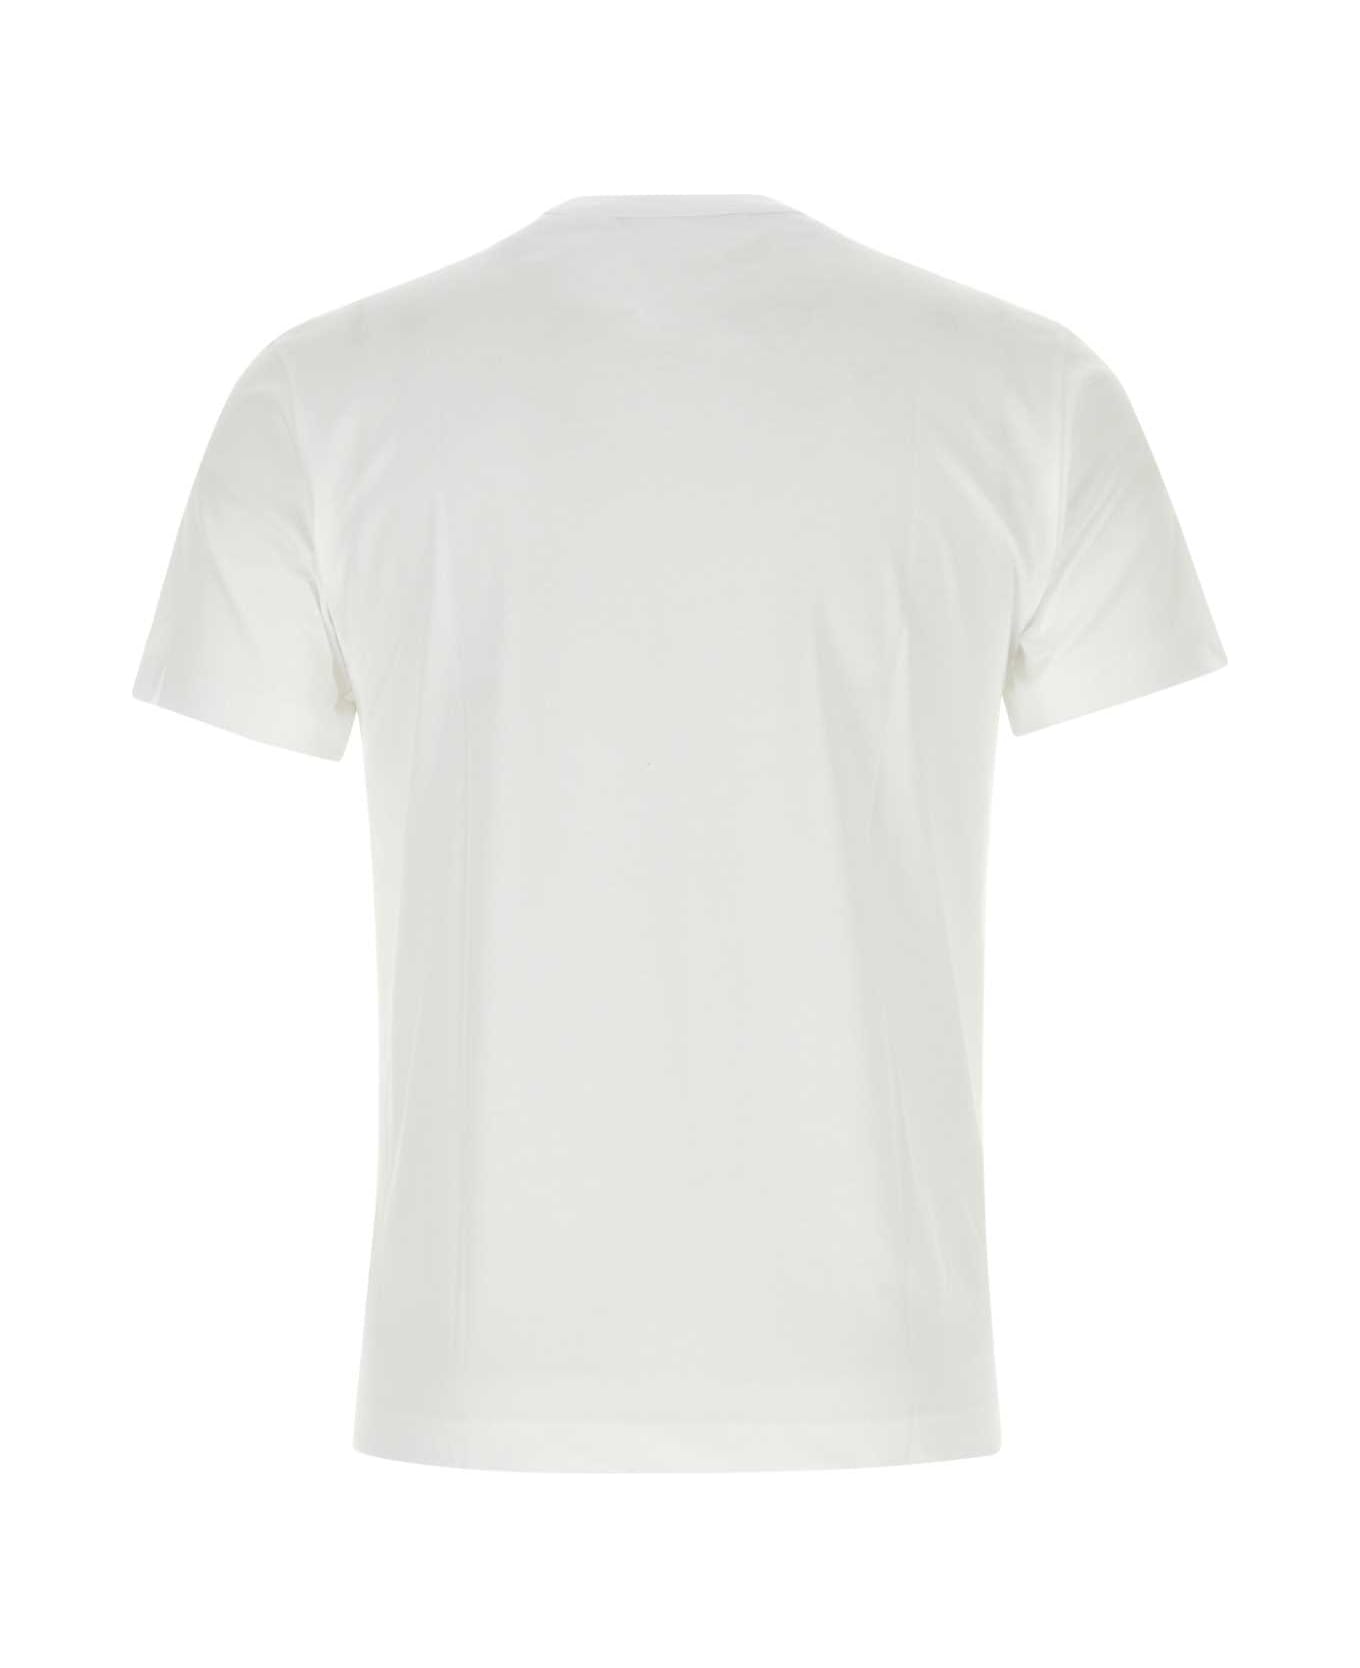 Comme des Garçons White Cotton T-shirt - WHITE